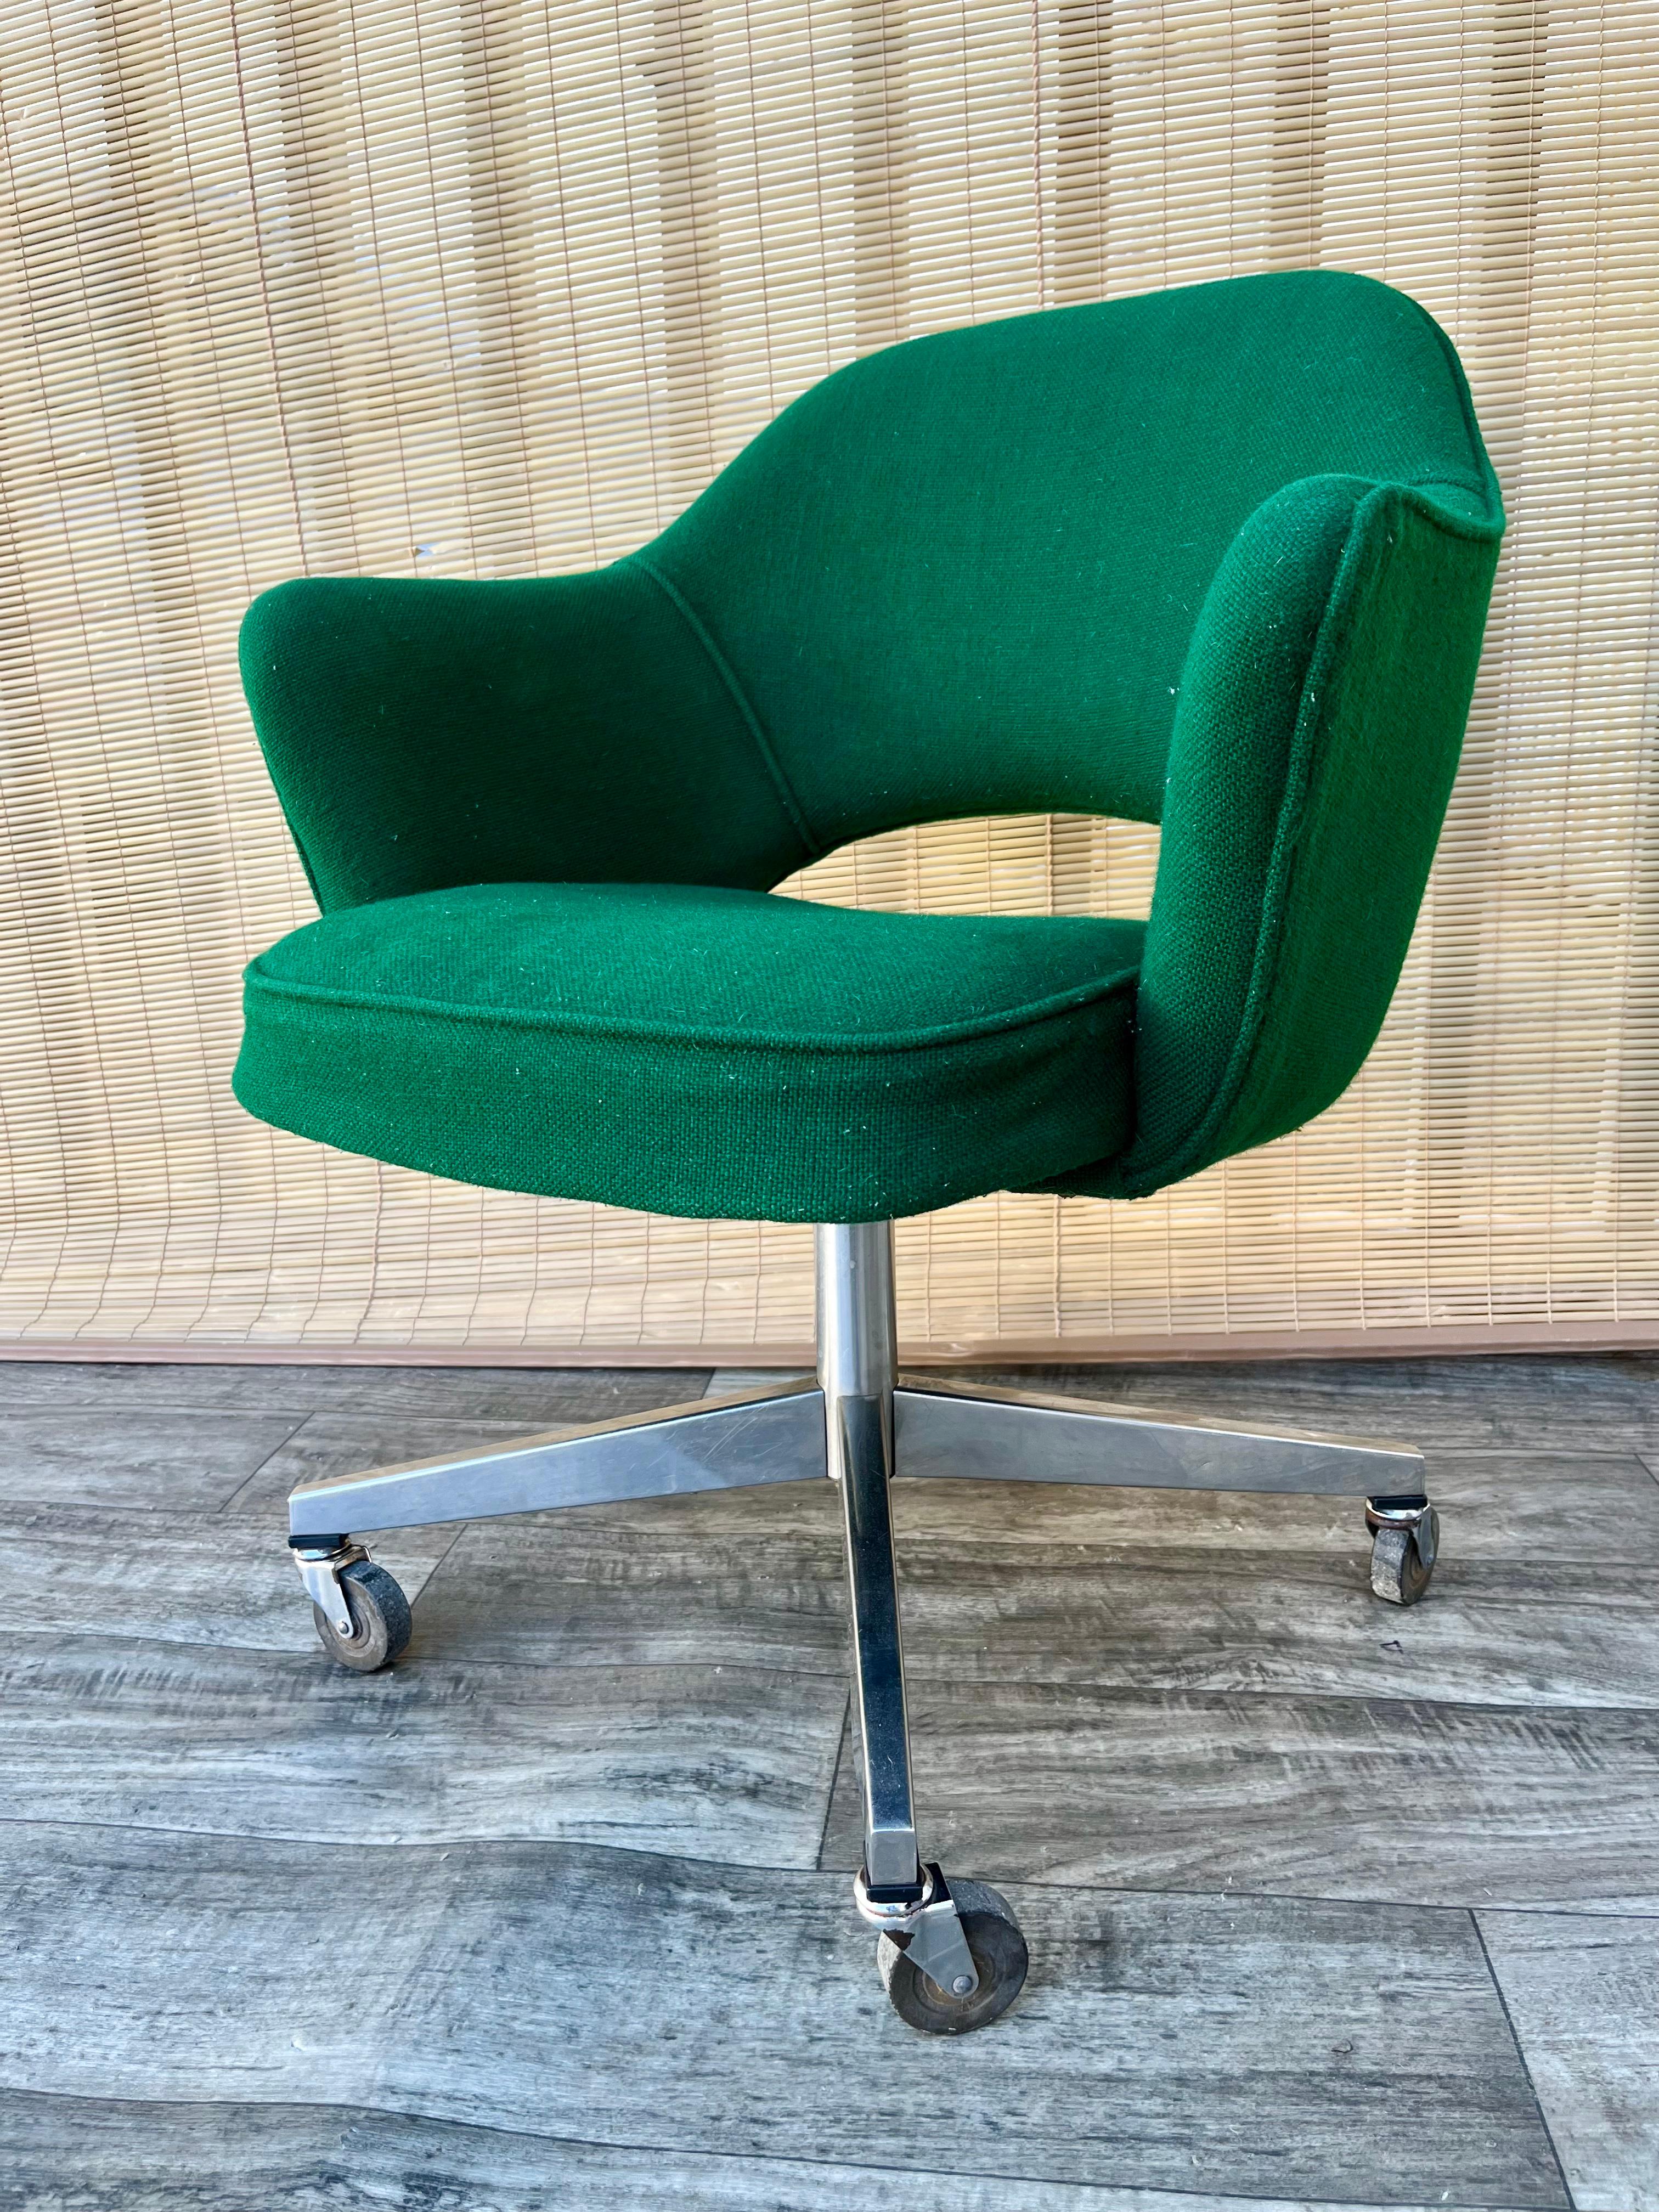 Chaise de bureau Vintage Mid Century Modern avec accoudoirs par Saarinen pour Knoll. Circa 1970 
Elle est dotée d'un rembourrage en sergé vert chasseur et de roulettes pour une mobilité aisée.
La chaise s'incline et pivote en douceur.
En bon état